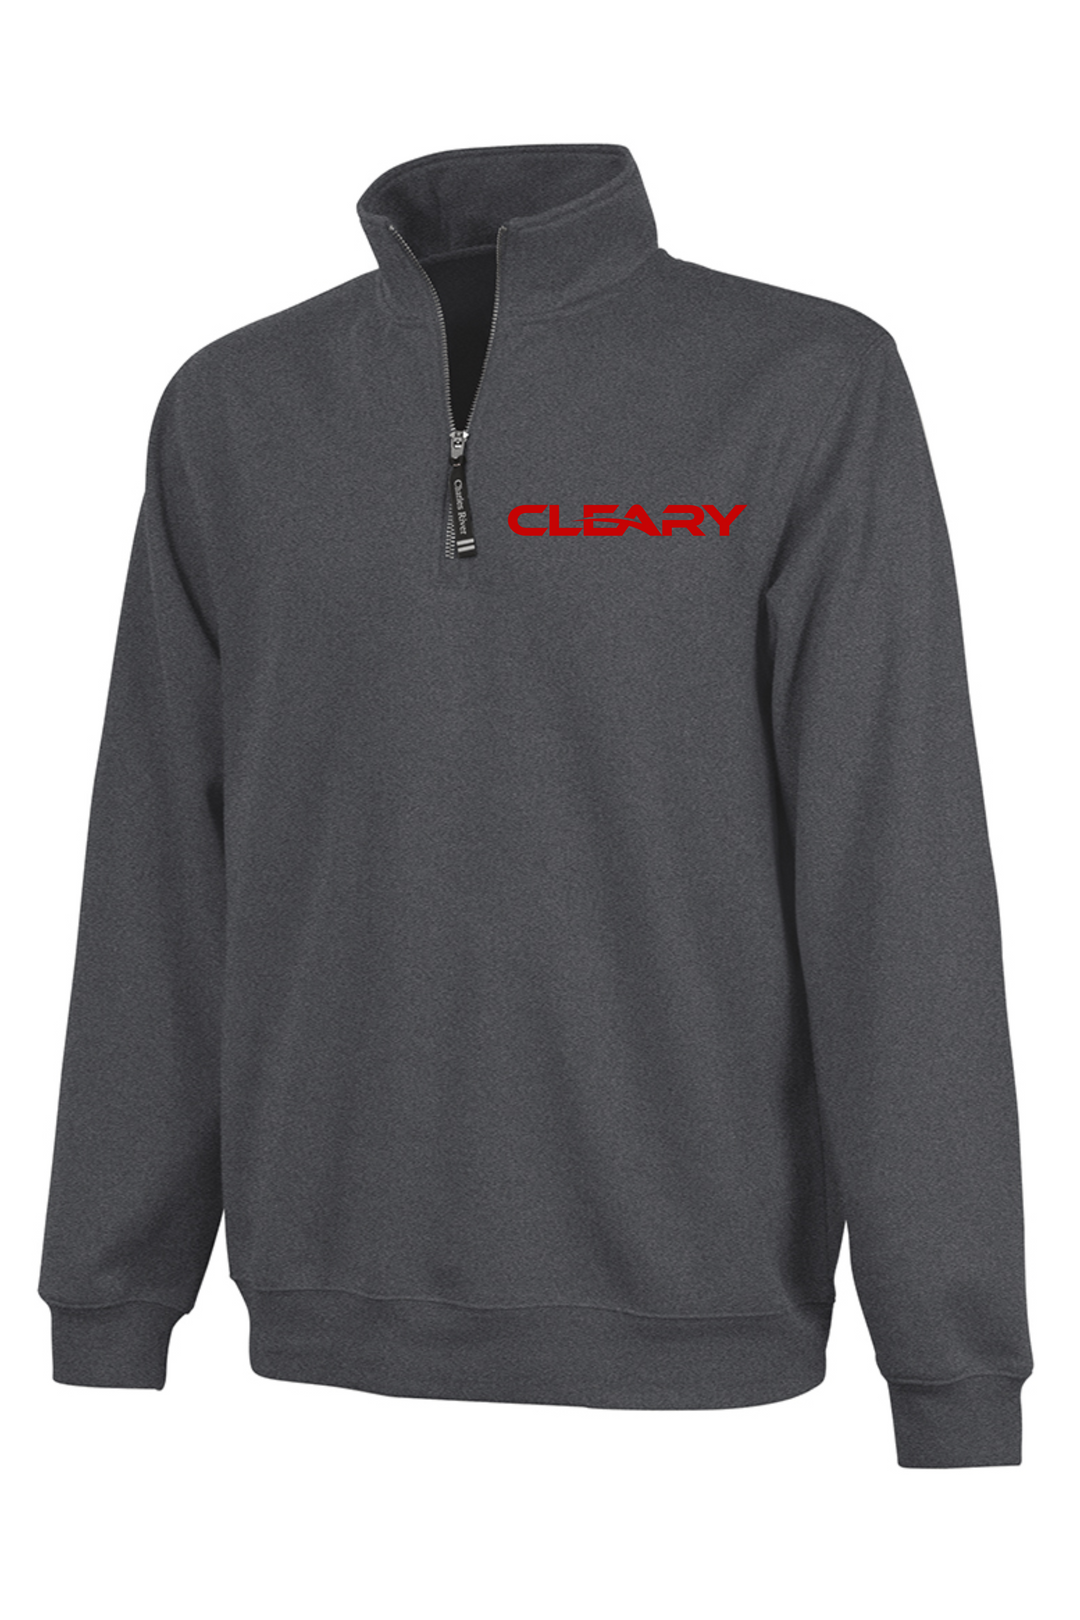 Cleary's Crosswind Quarter Zip Sweatshirt Dark Charcoal